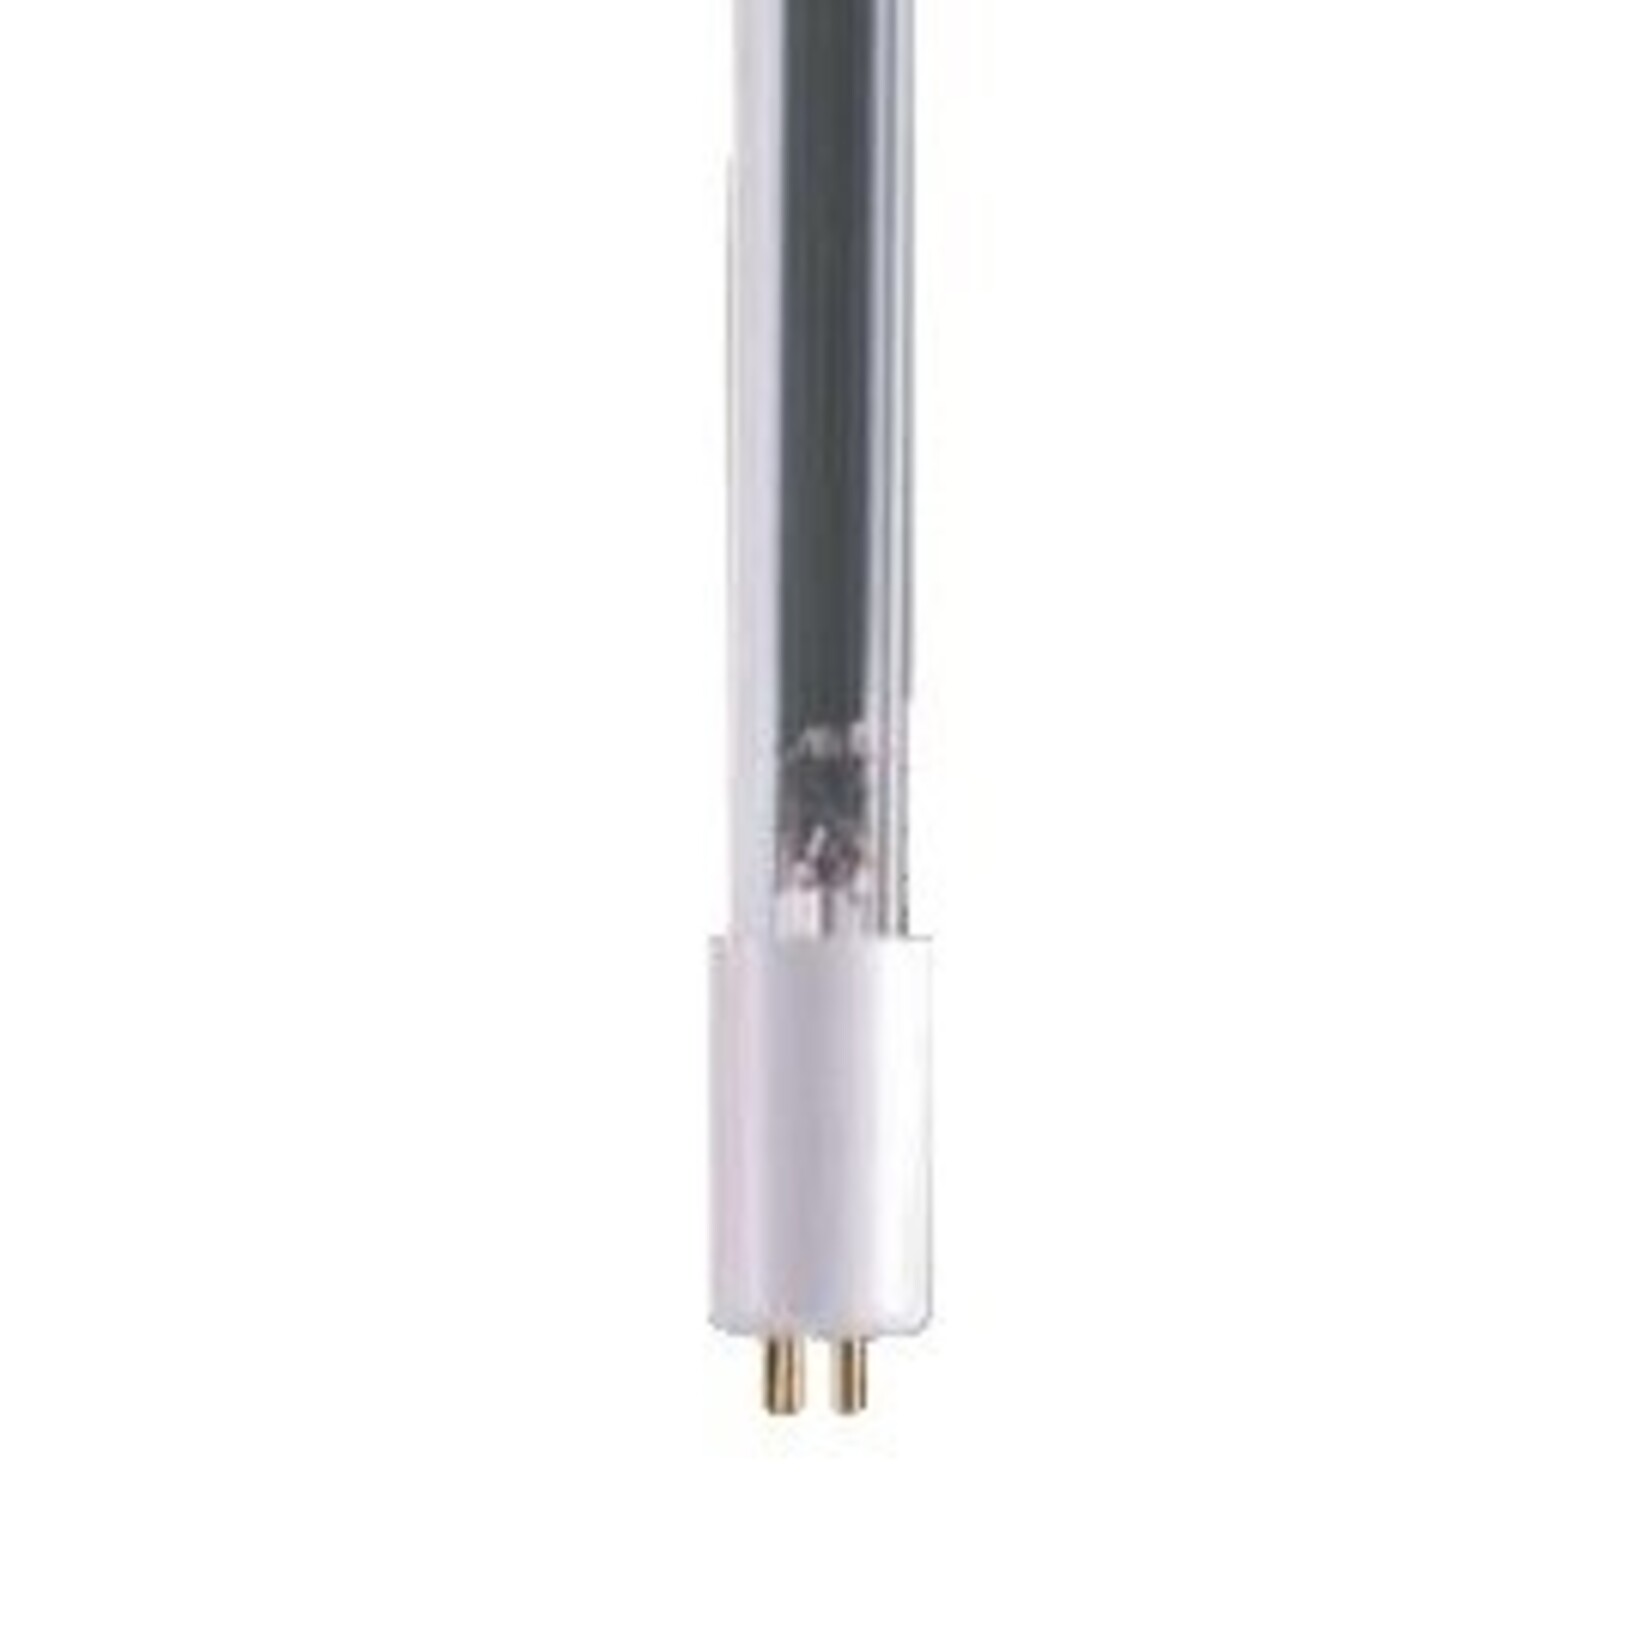 Uv-c lamp t5/75 w tbv jumbo koi wit voetje (3903579)